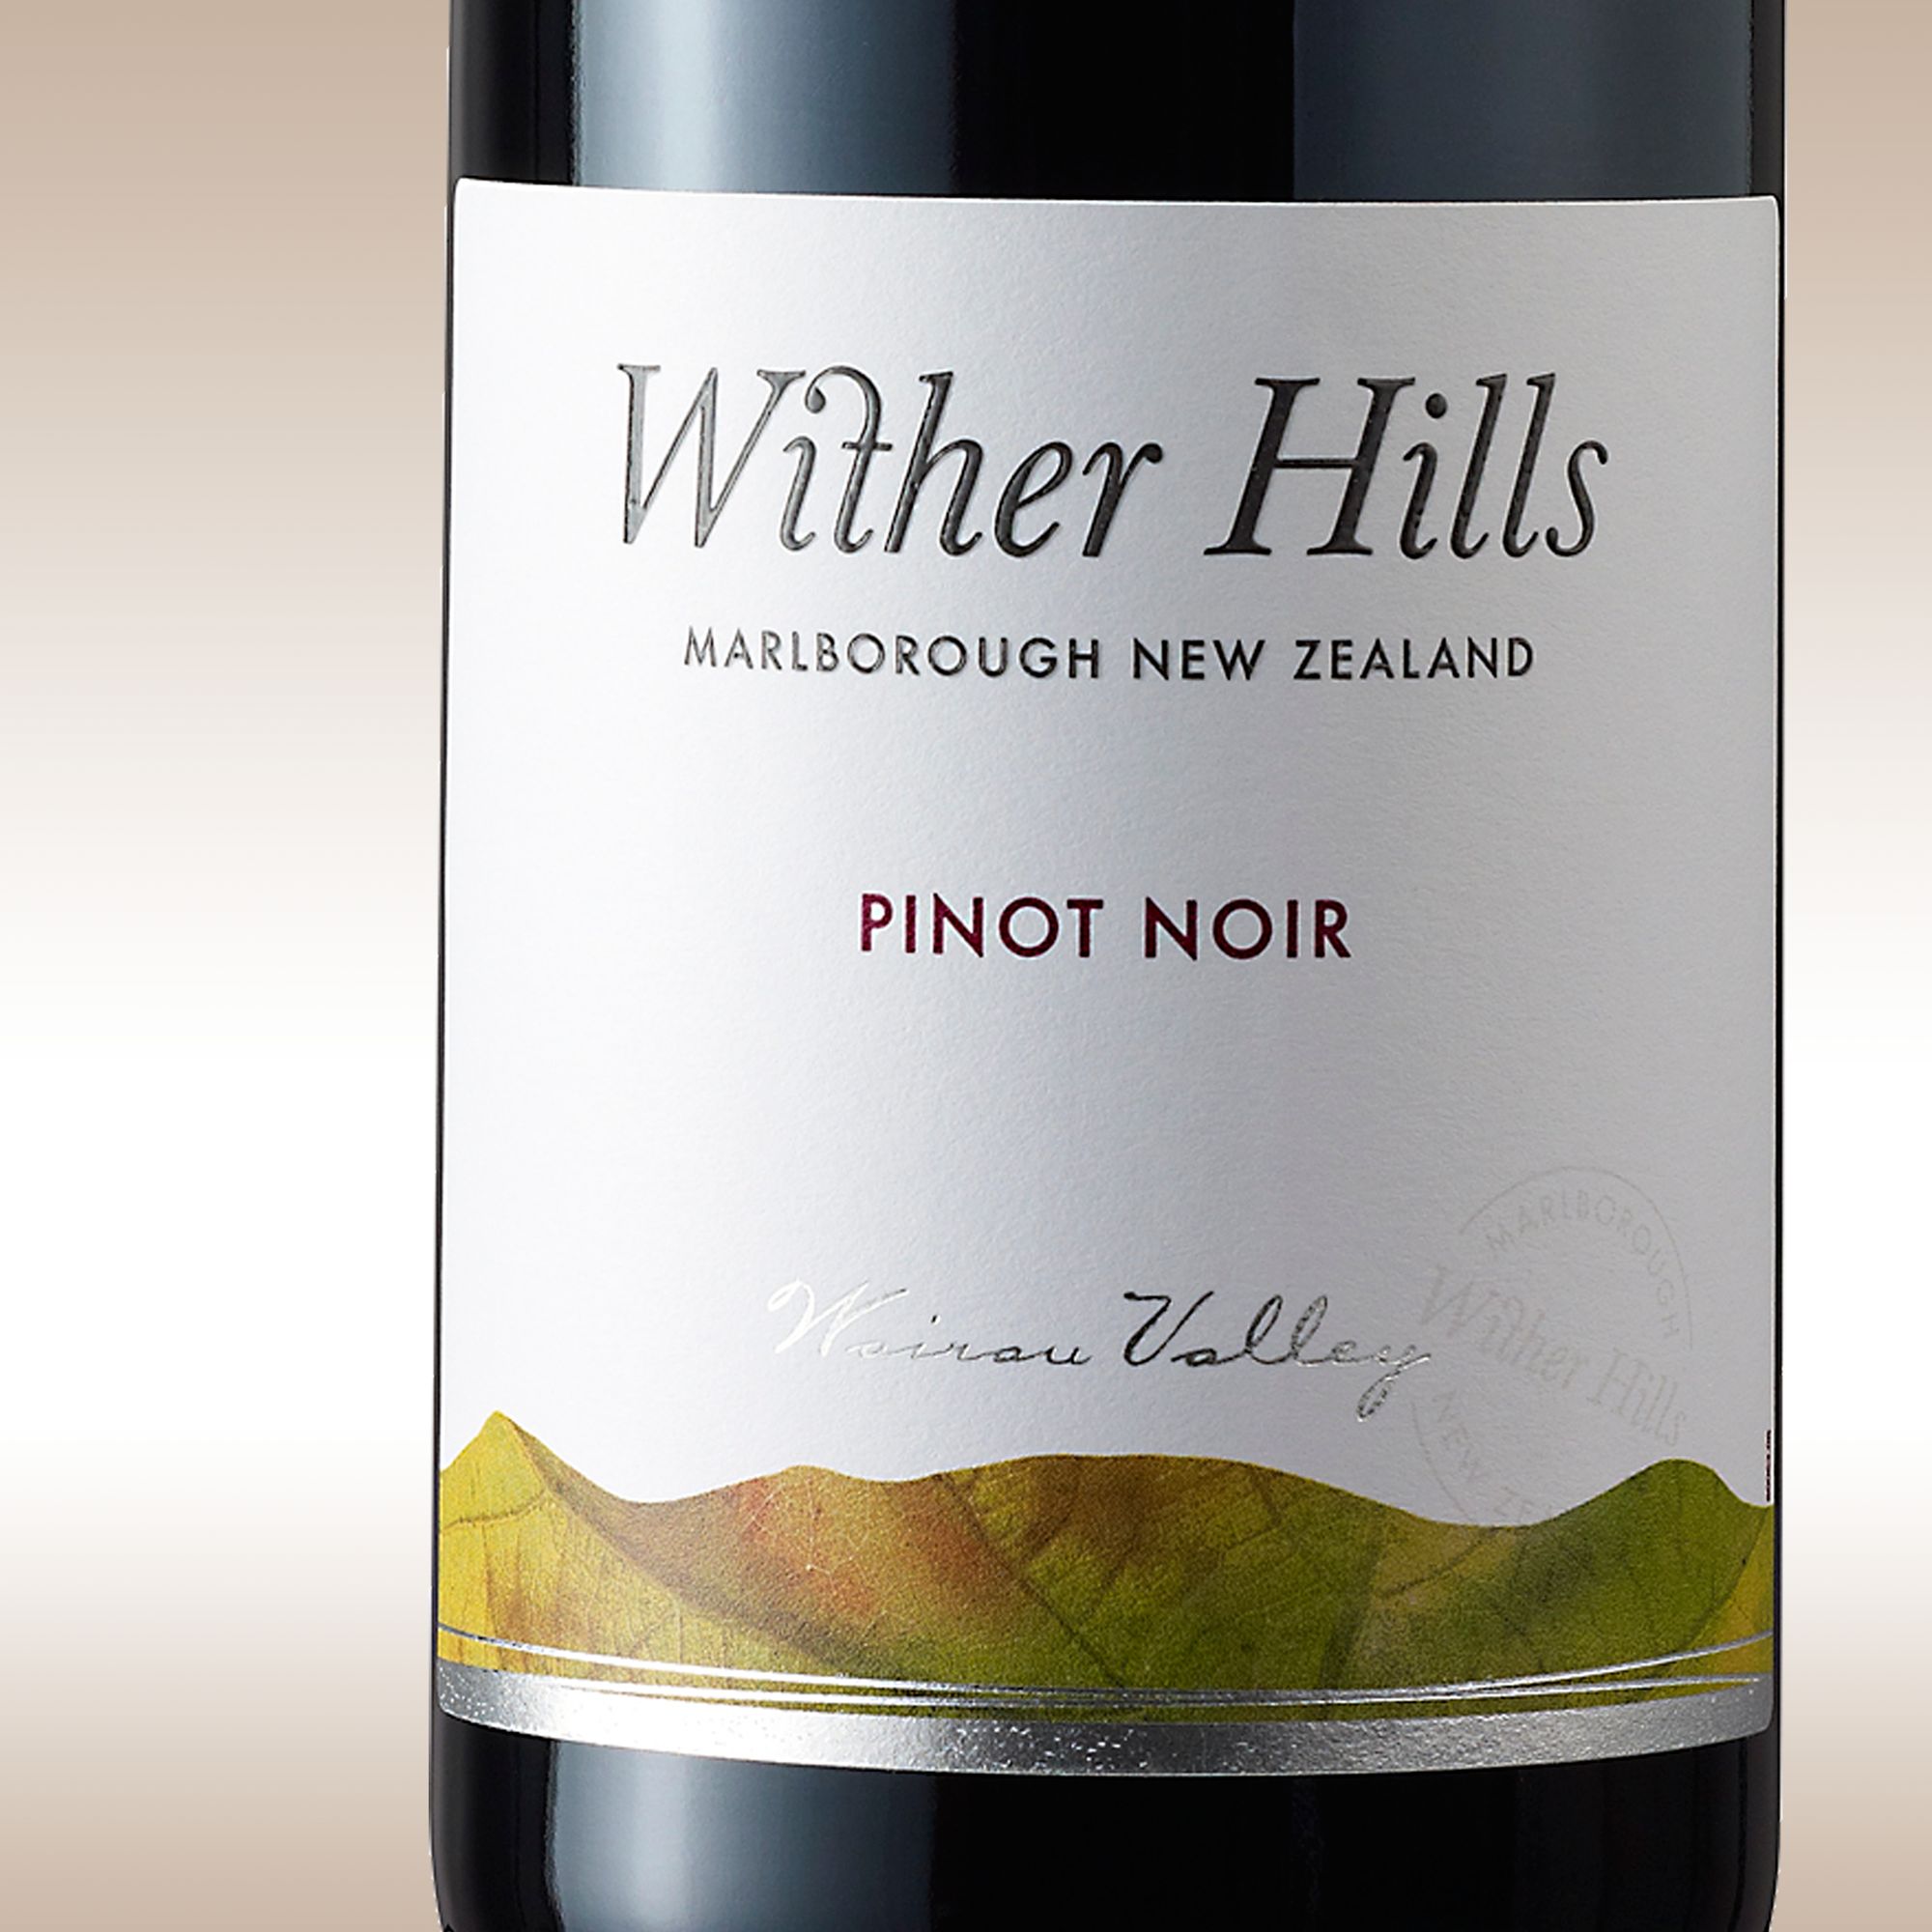 Wither Hills Pinot Noir 2005/06 Marlborough, New Zealand